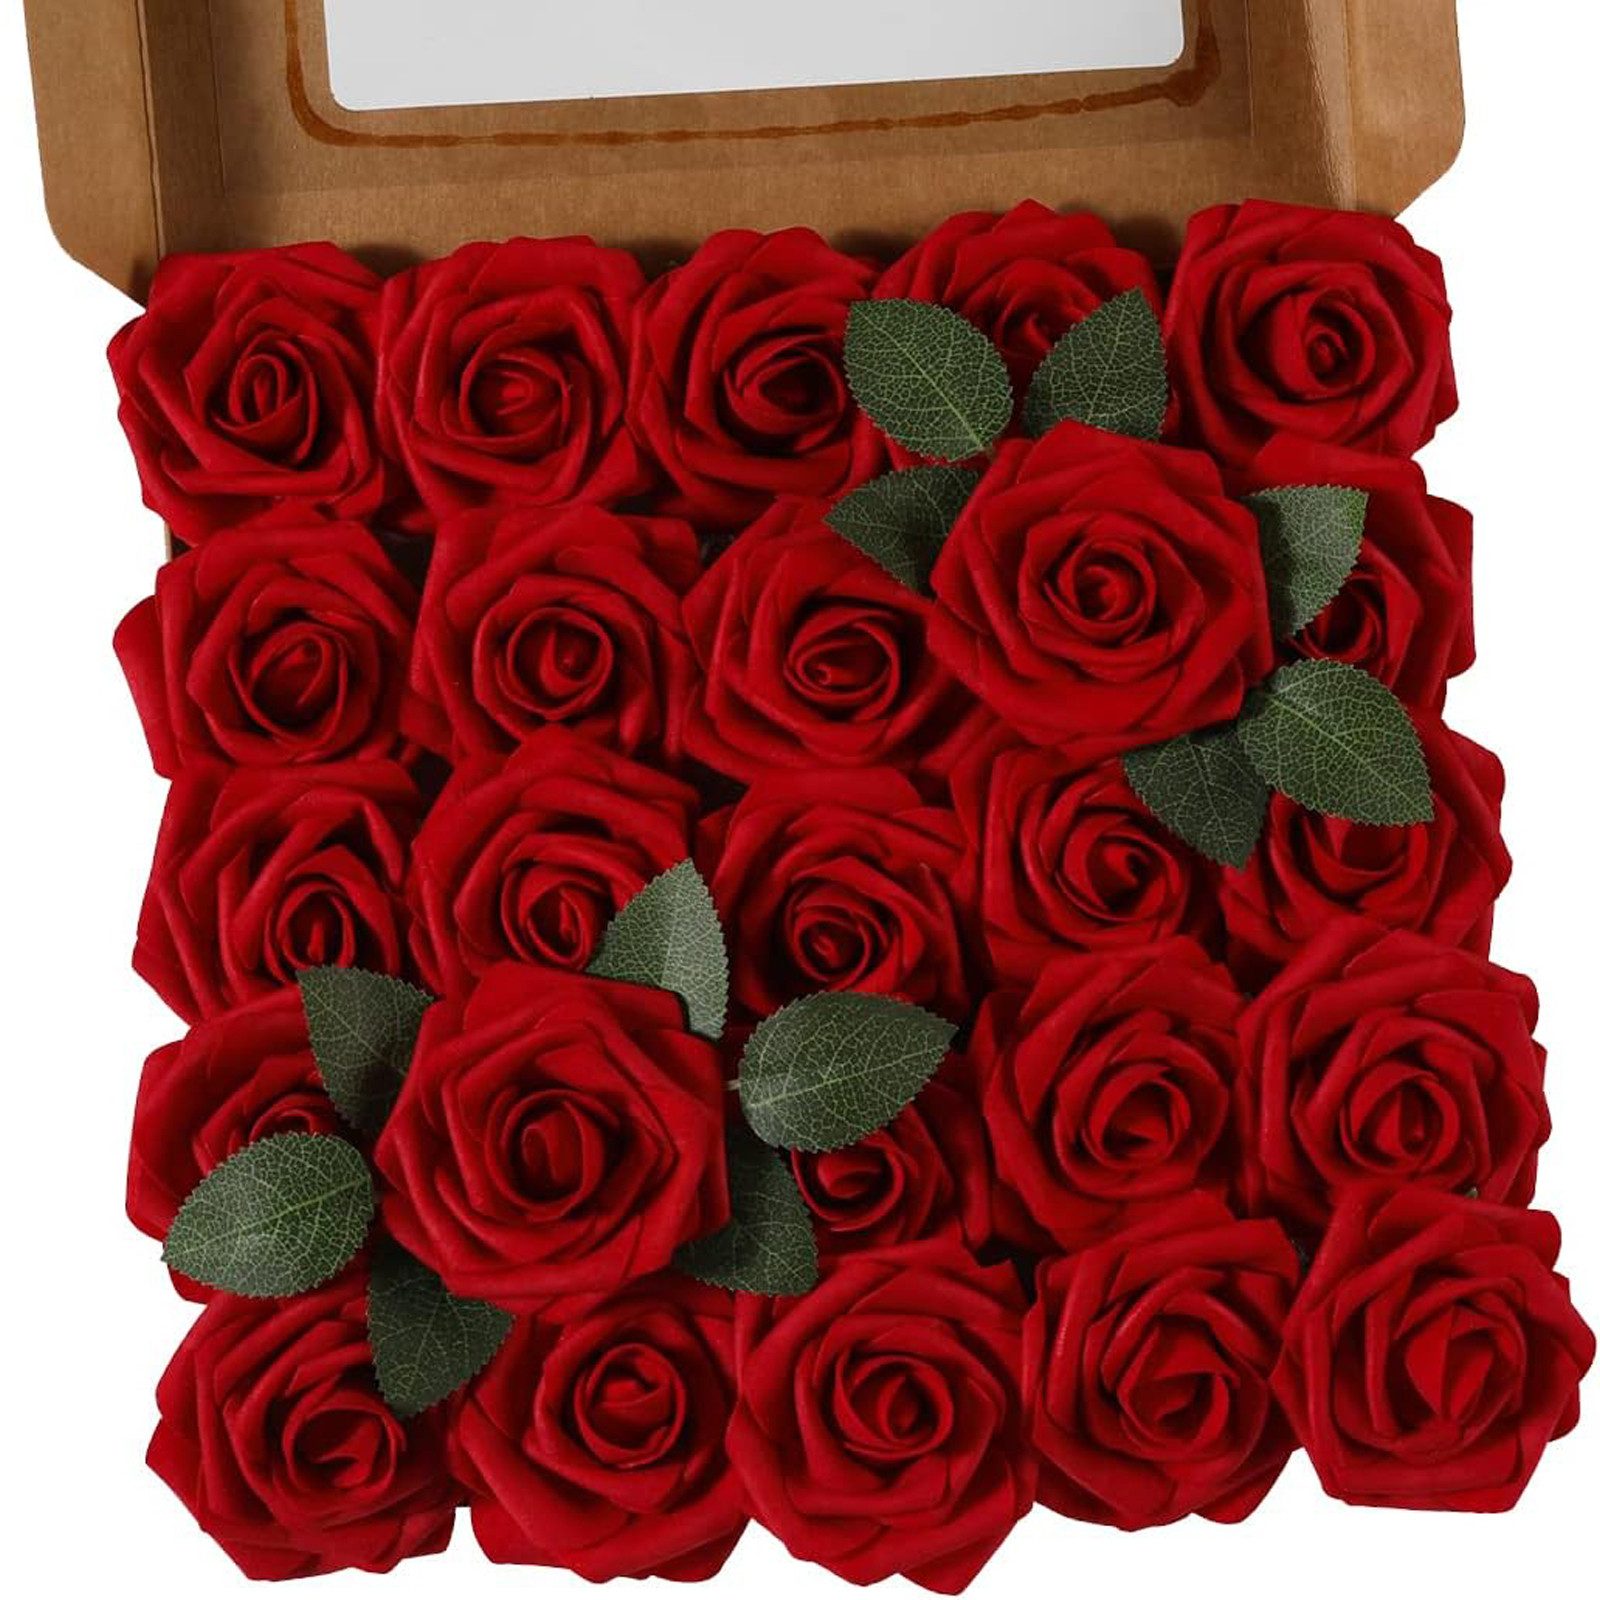 Kunstblume 25 Stück Künstliche Rose Blume Gefälschte Rosen Blumen Blumensträuße Rose, MODFU, Höhe 21.5 cm, Kunstpflanze Basteln Valentinstag Geschenk Hochzeit Party Haus Deko